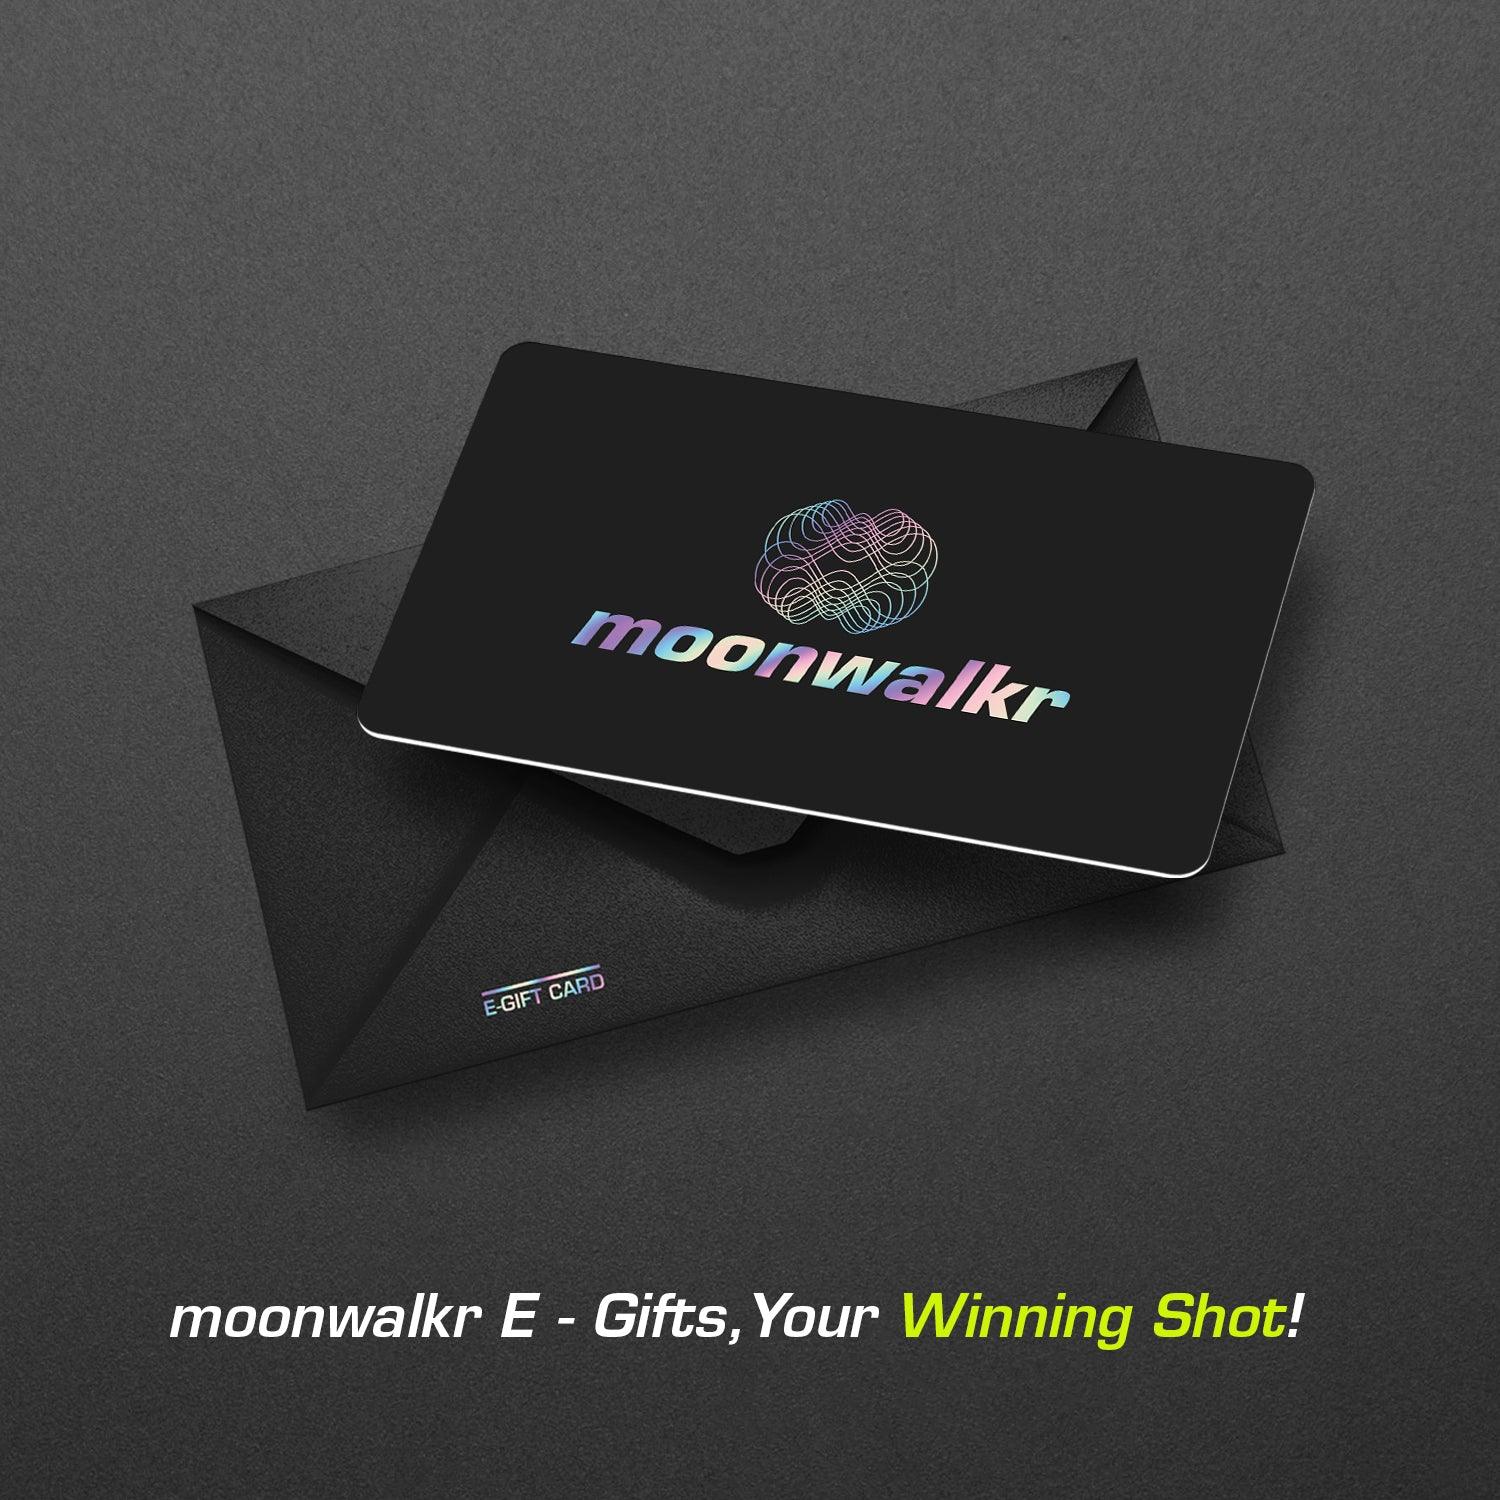 moonwalkr Gift Card moonwalkrindia